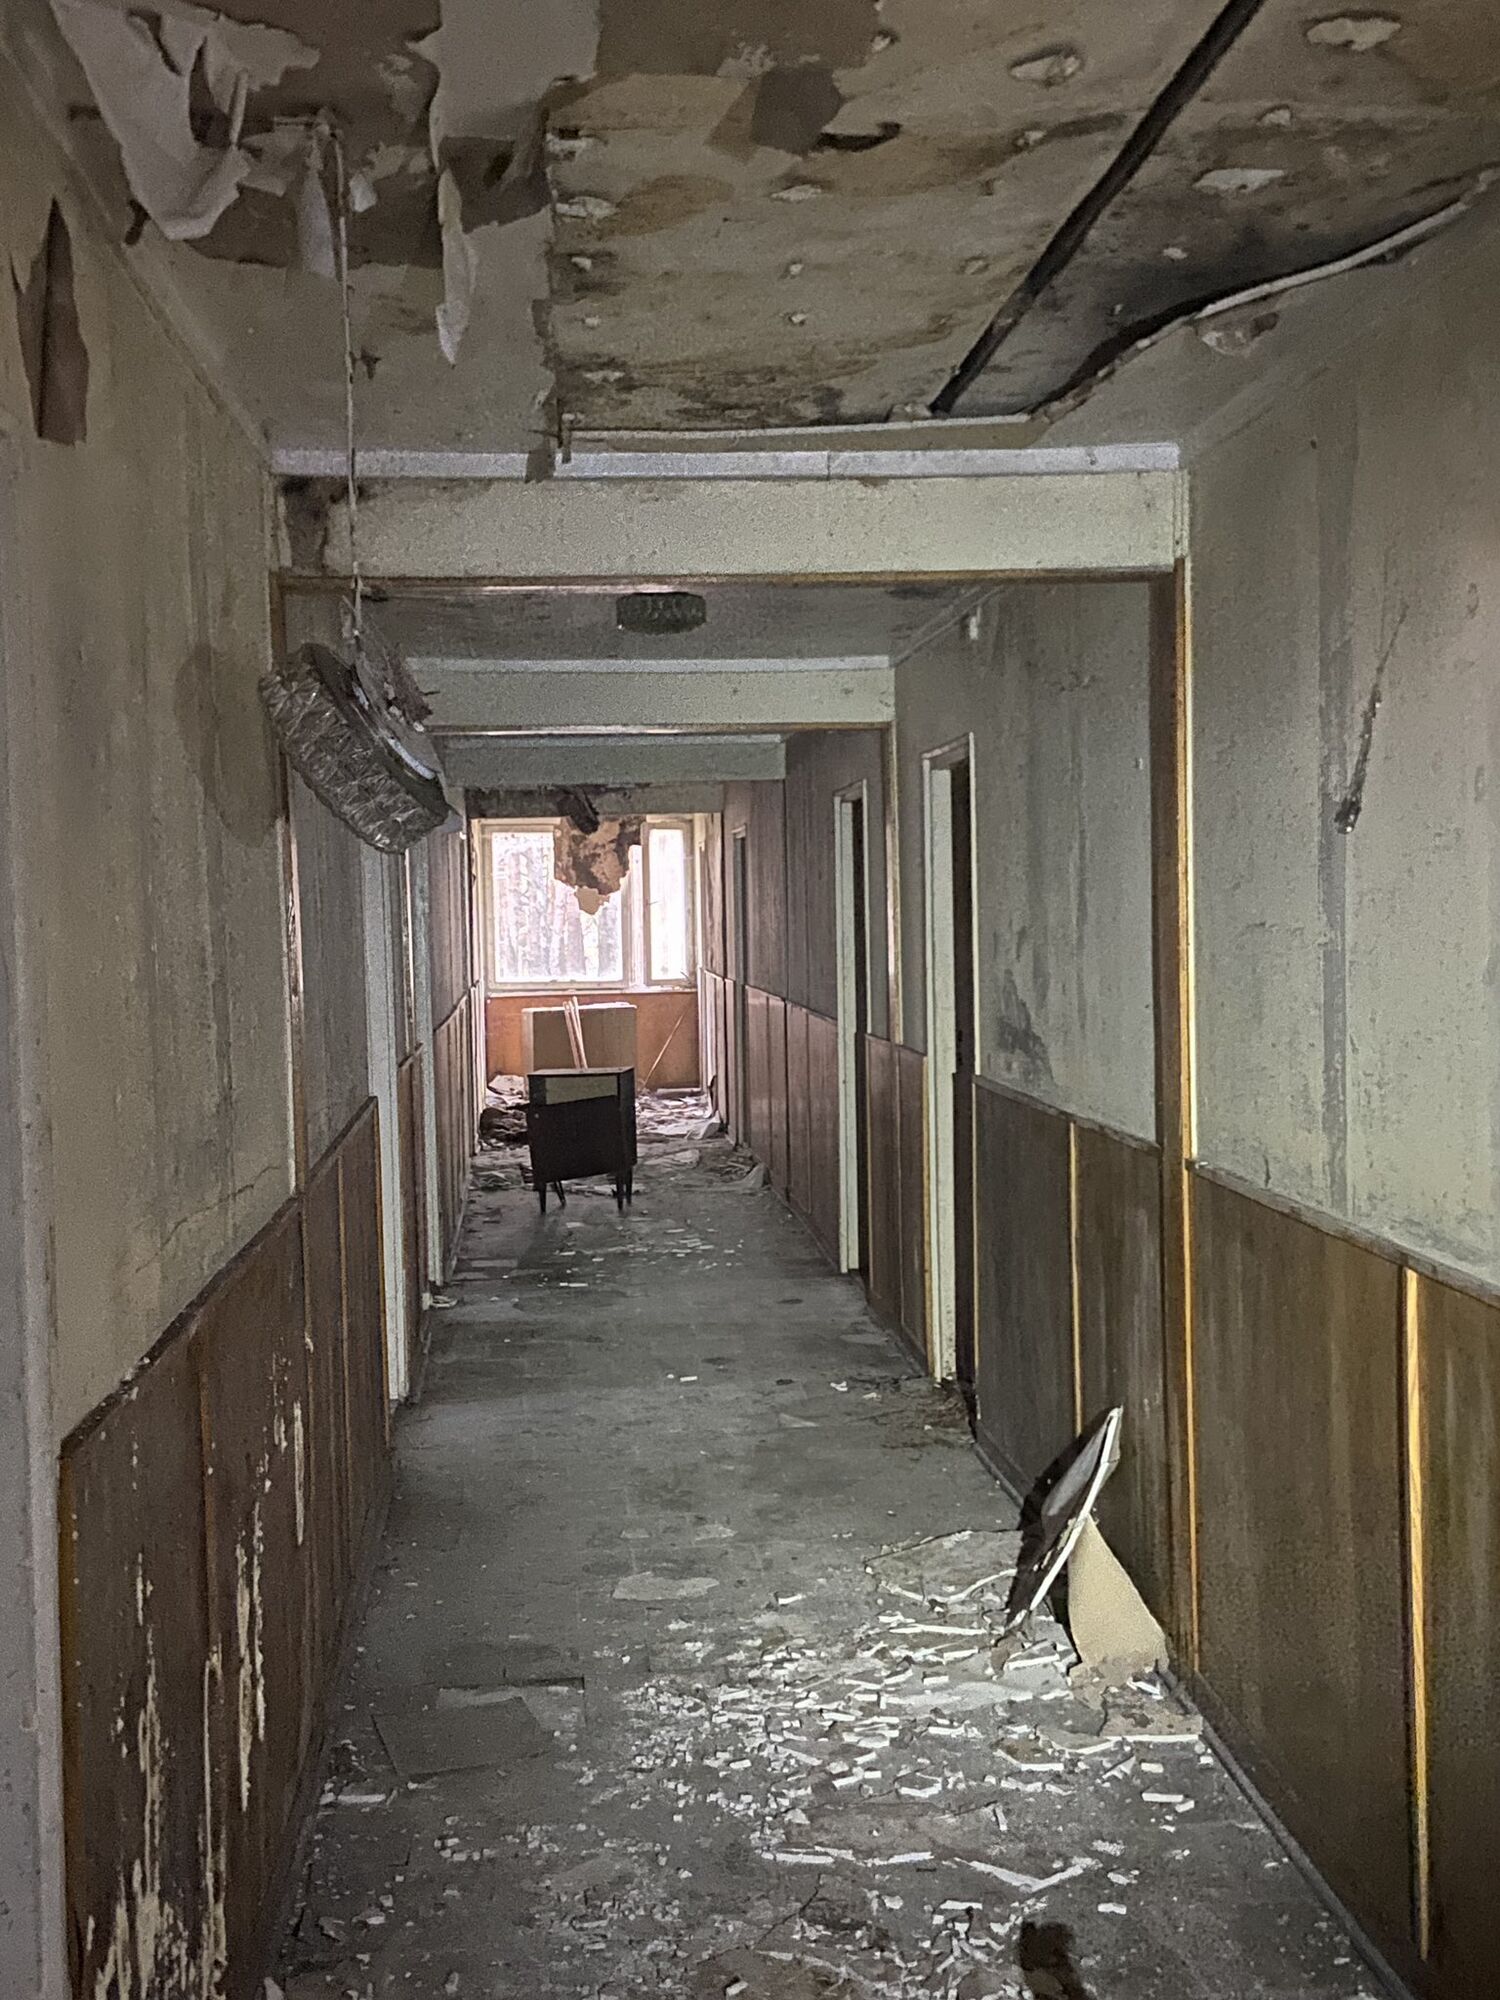 Вырванные розетки и кабели из стен: в Польше новые арендаторы показали помещение, которым раньше пользовалось посольство РФ. Фото